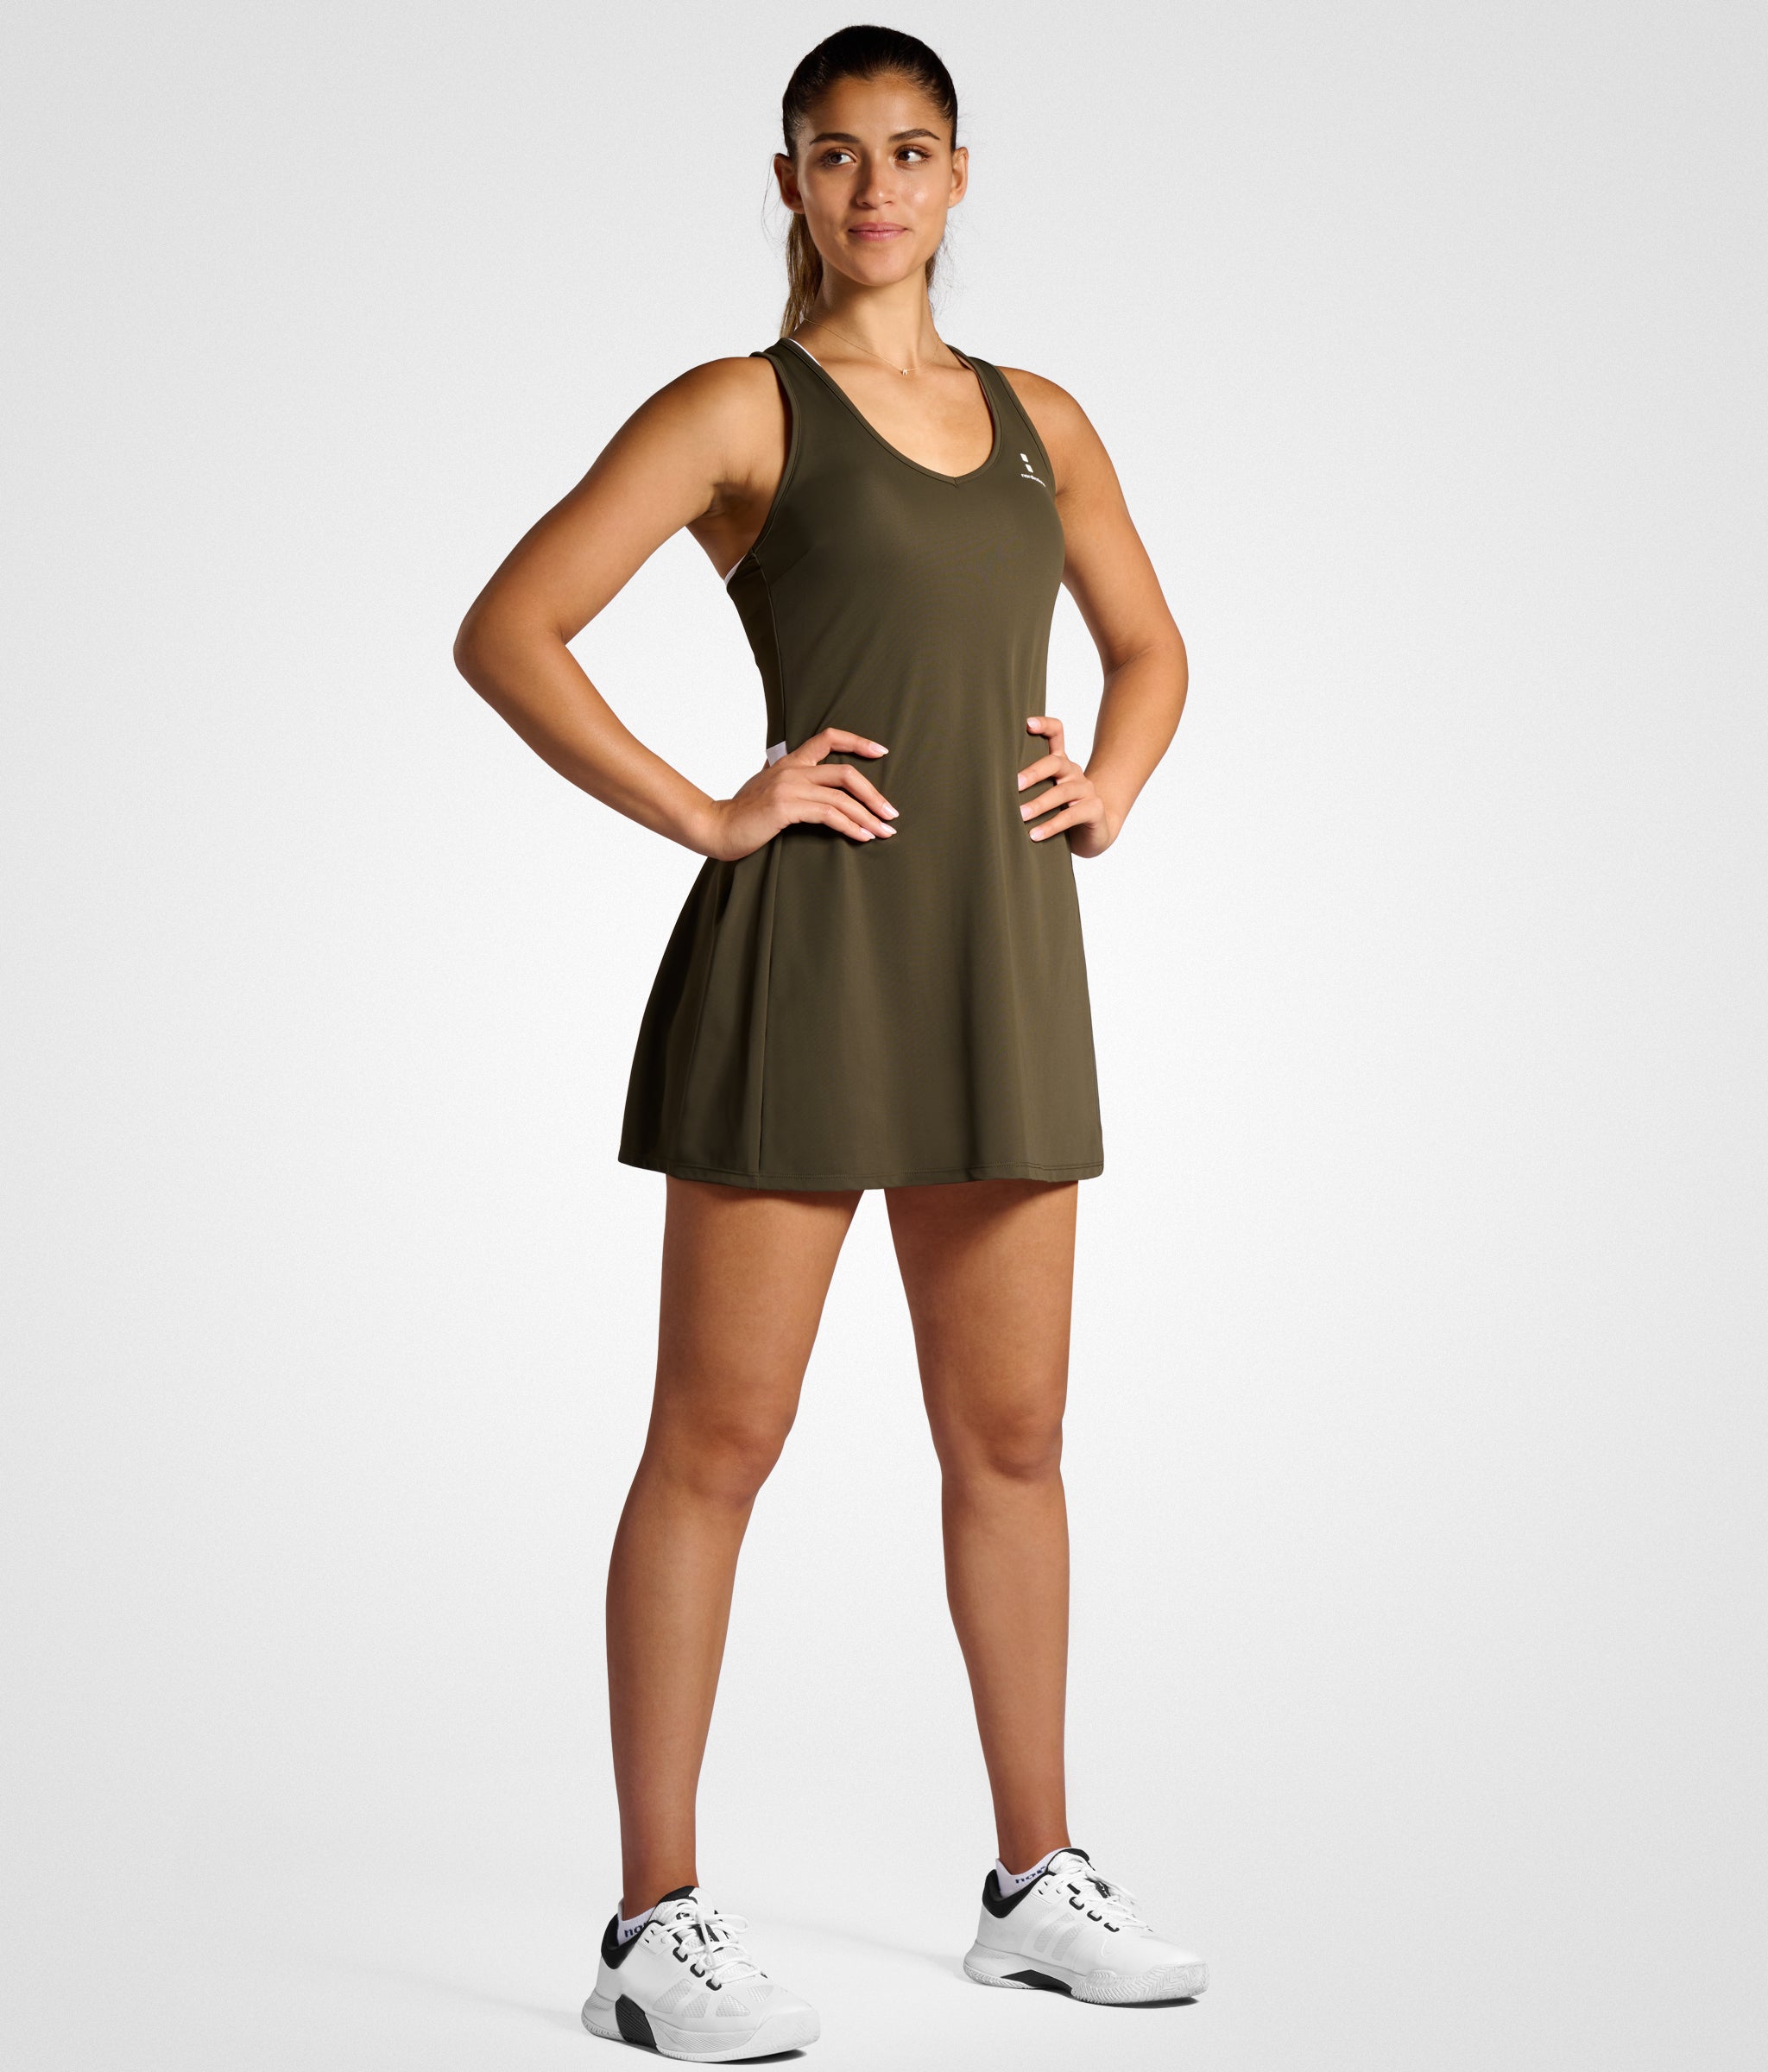 nordicdots tennis dress in olive green colour nordicdots.com